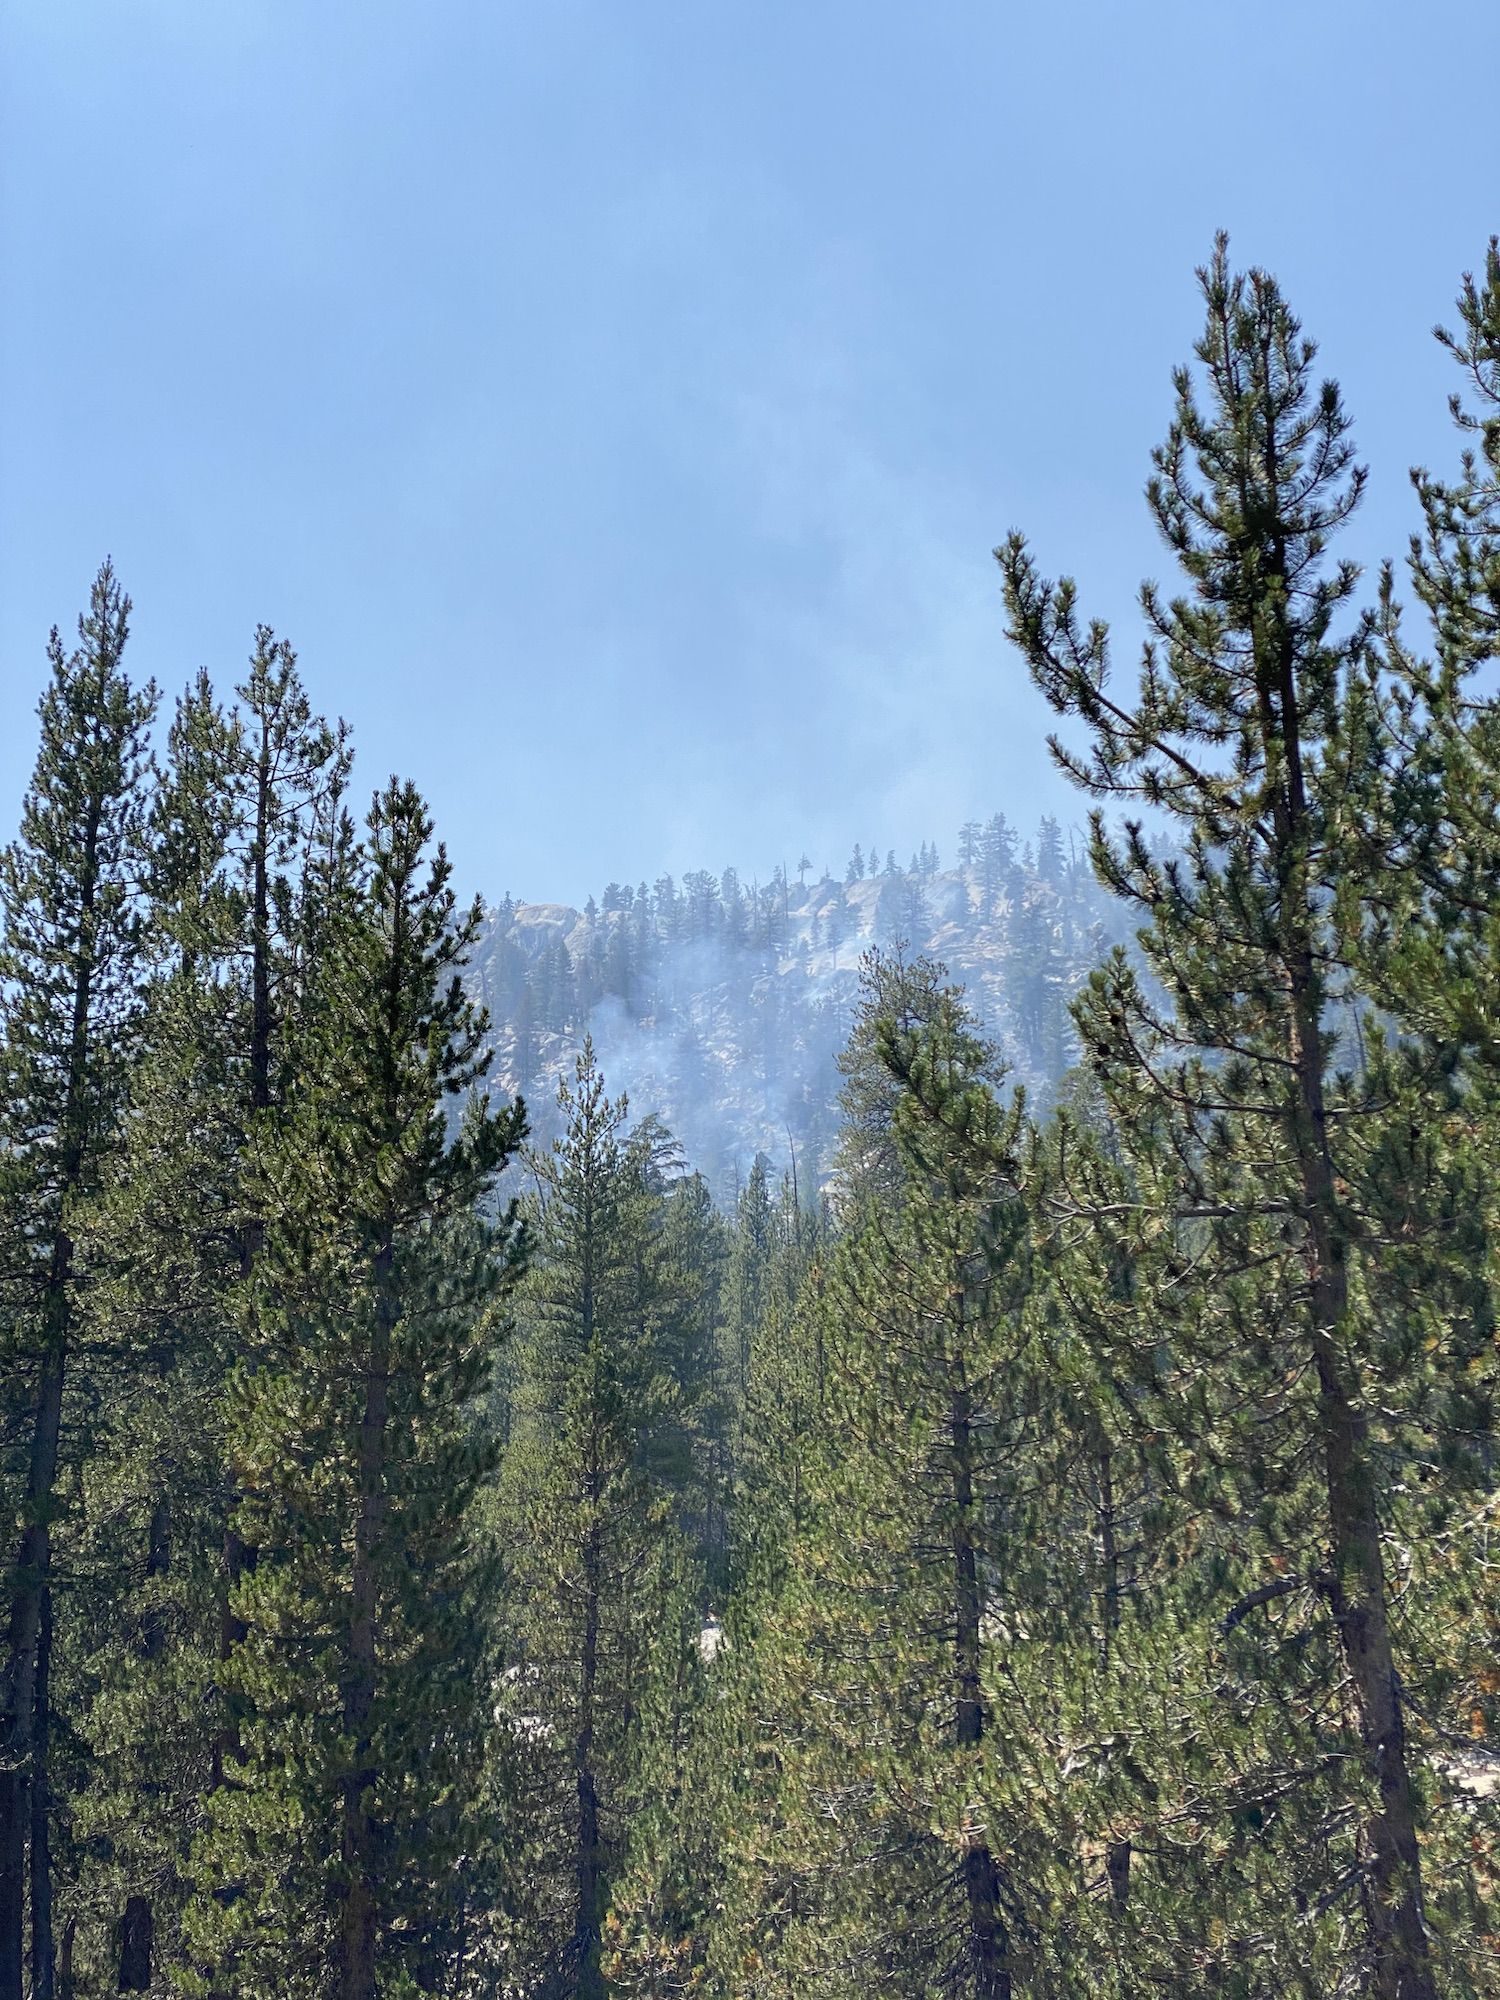 Smoke rising up above pine trees in Yosemite.